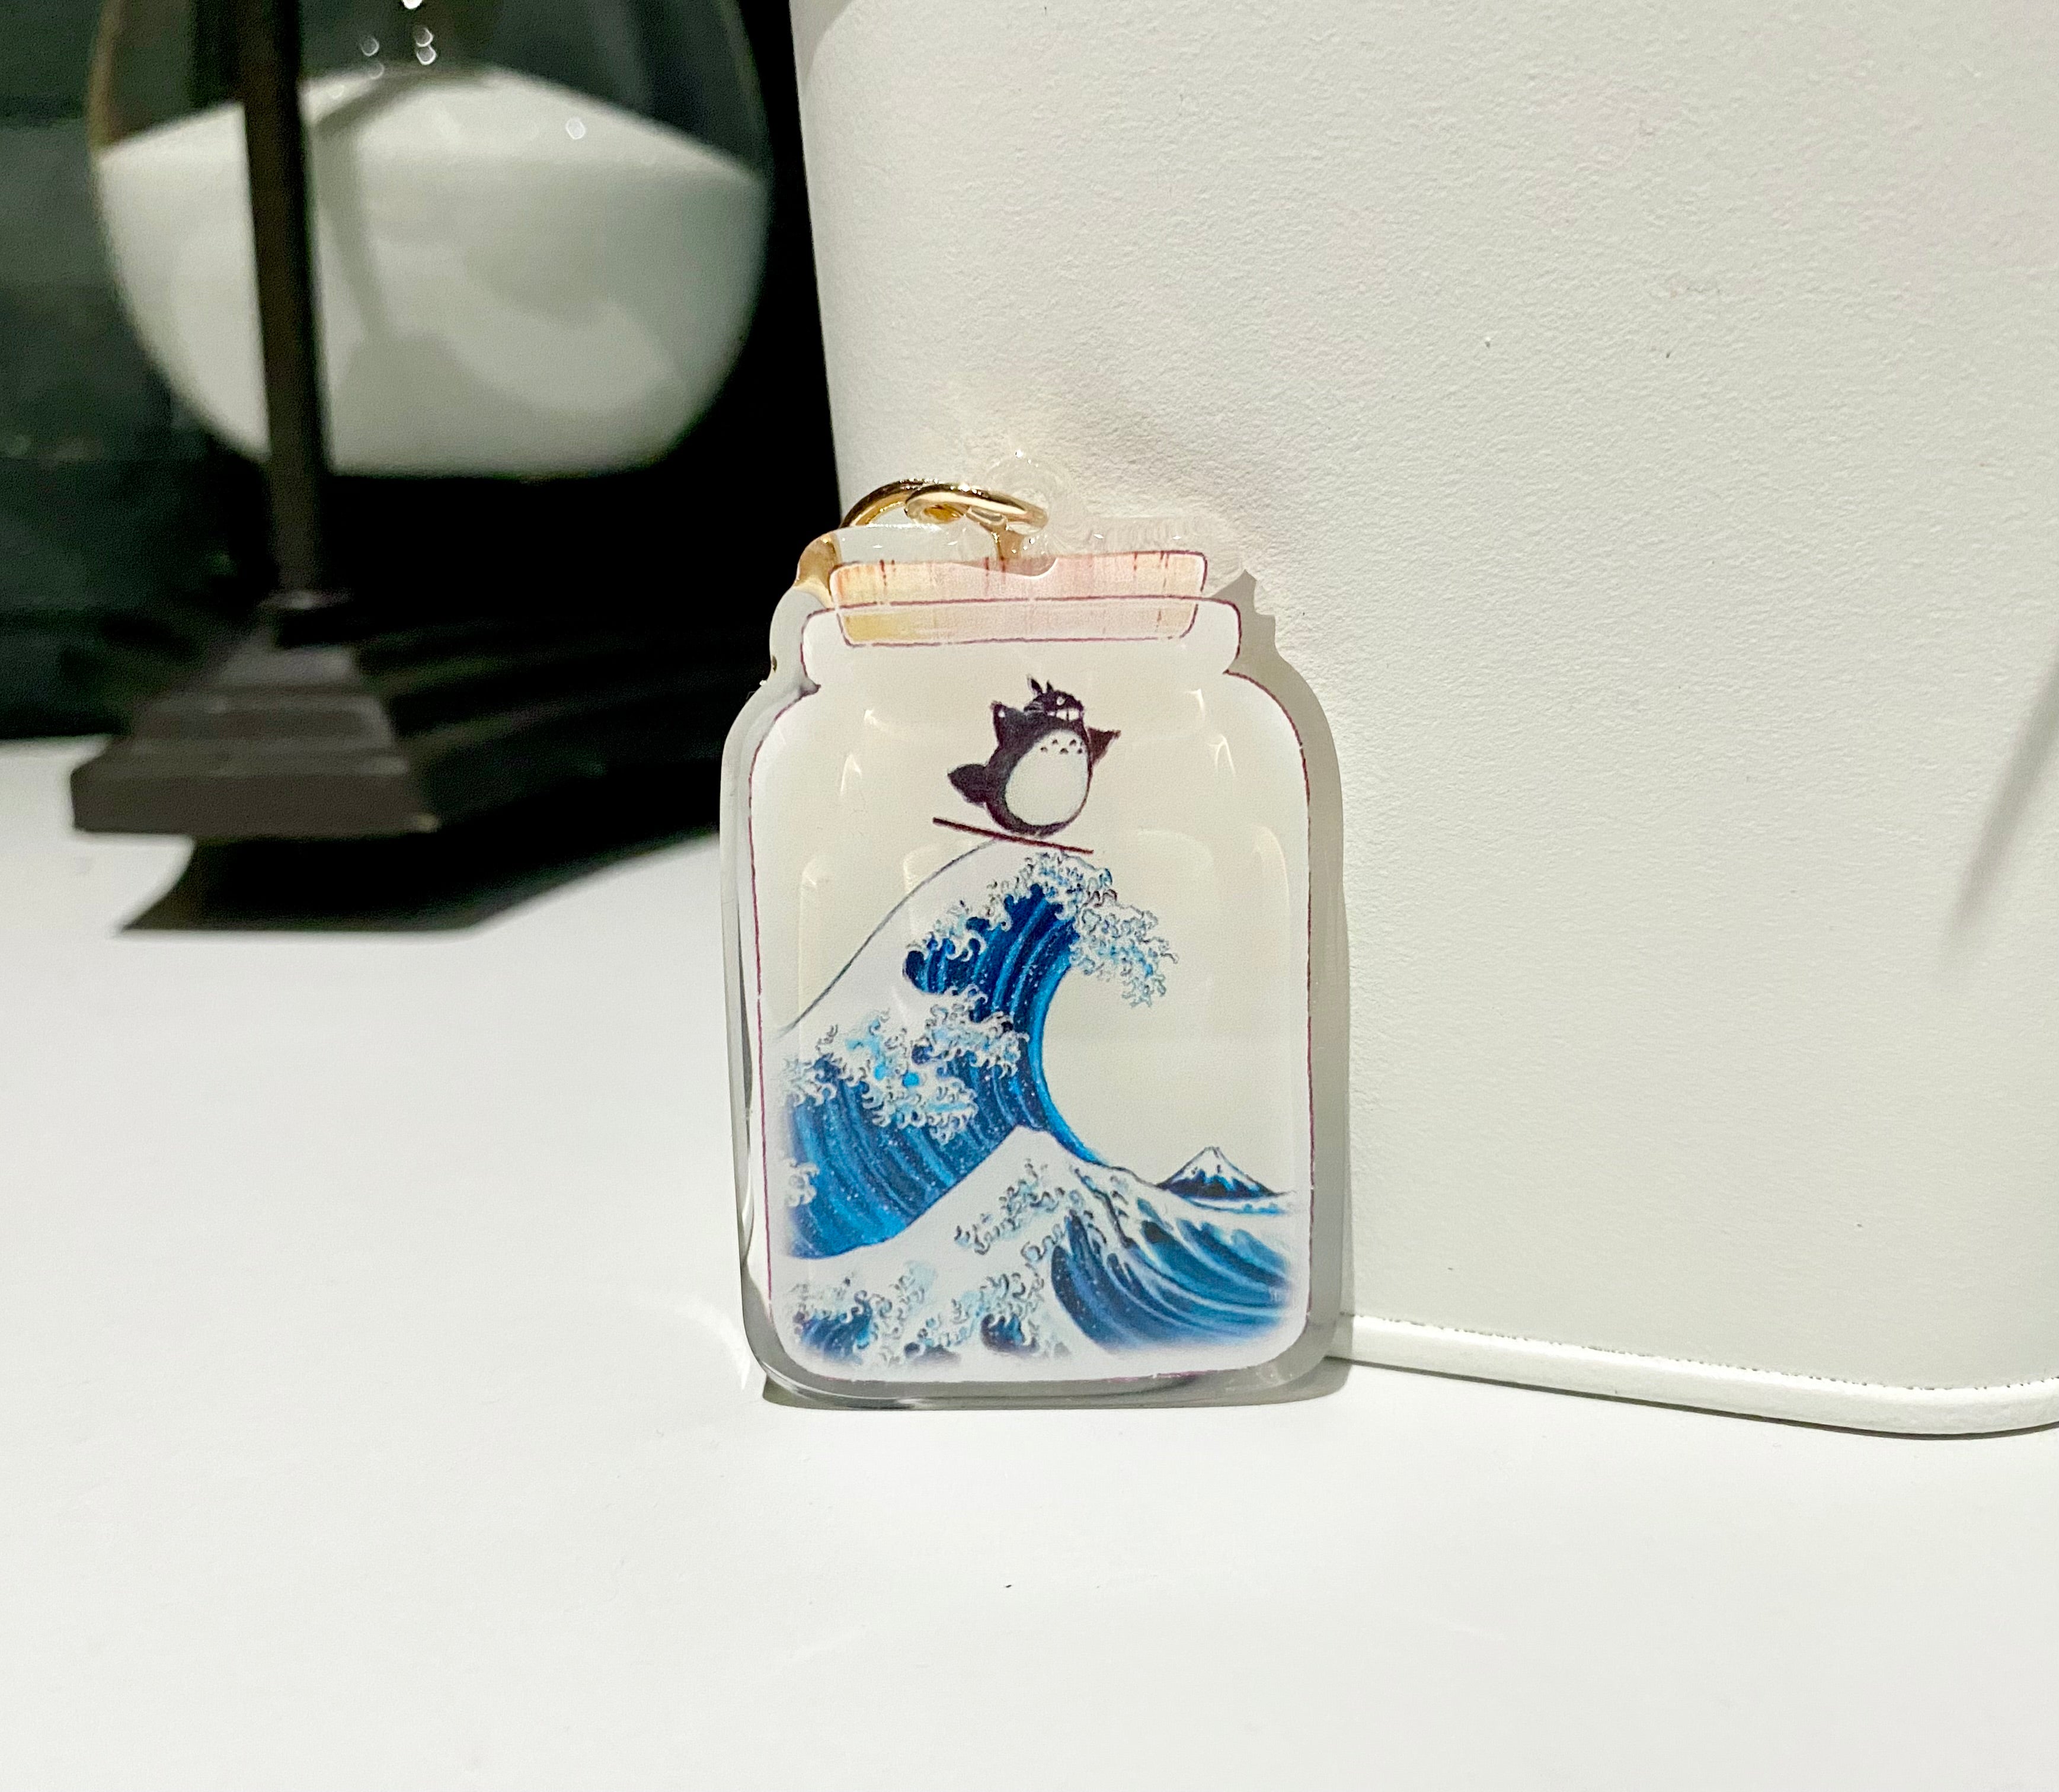 Keychain - Fan Art of Totoro Wave in a Bottle | 2.5" Double Sided Epoxy Keychain